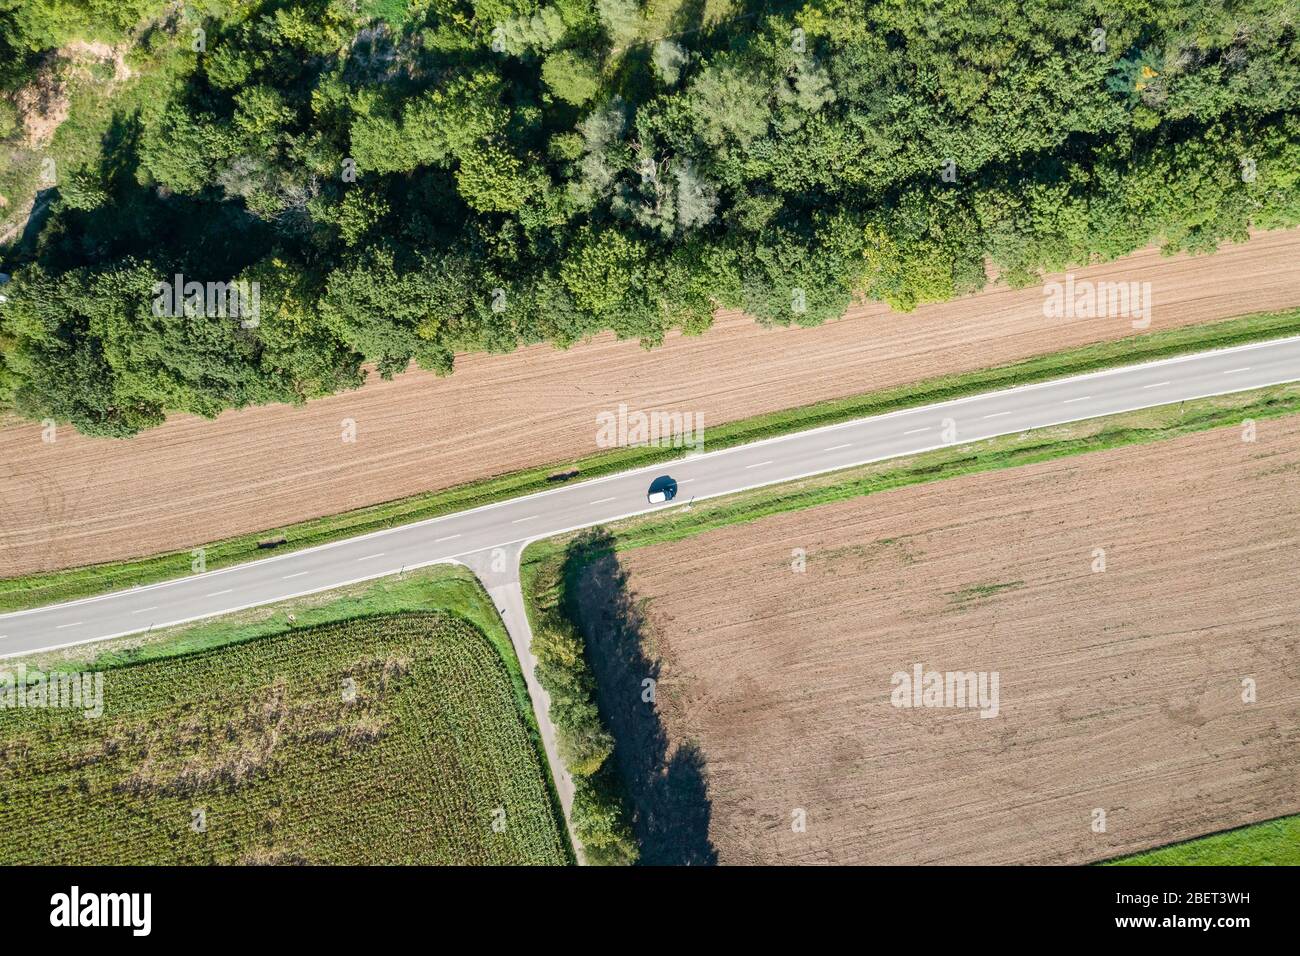 Luftaufnahme einer Landstraße mit Abzweigung und Fahrzeug Foto Stock